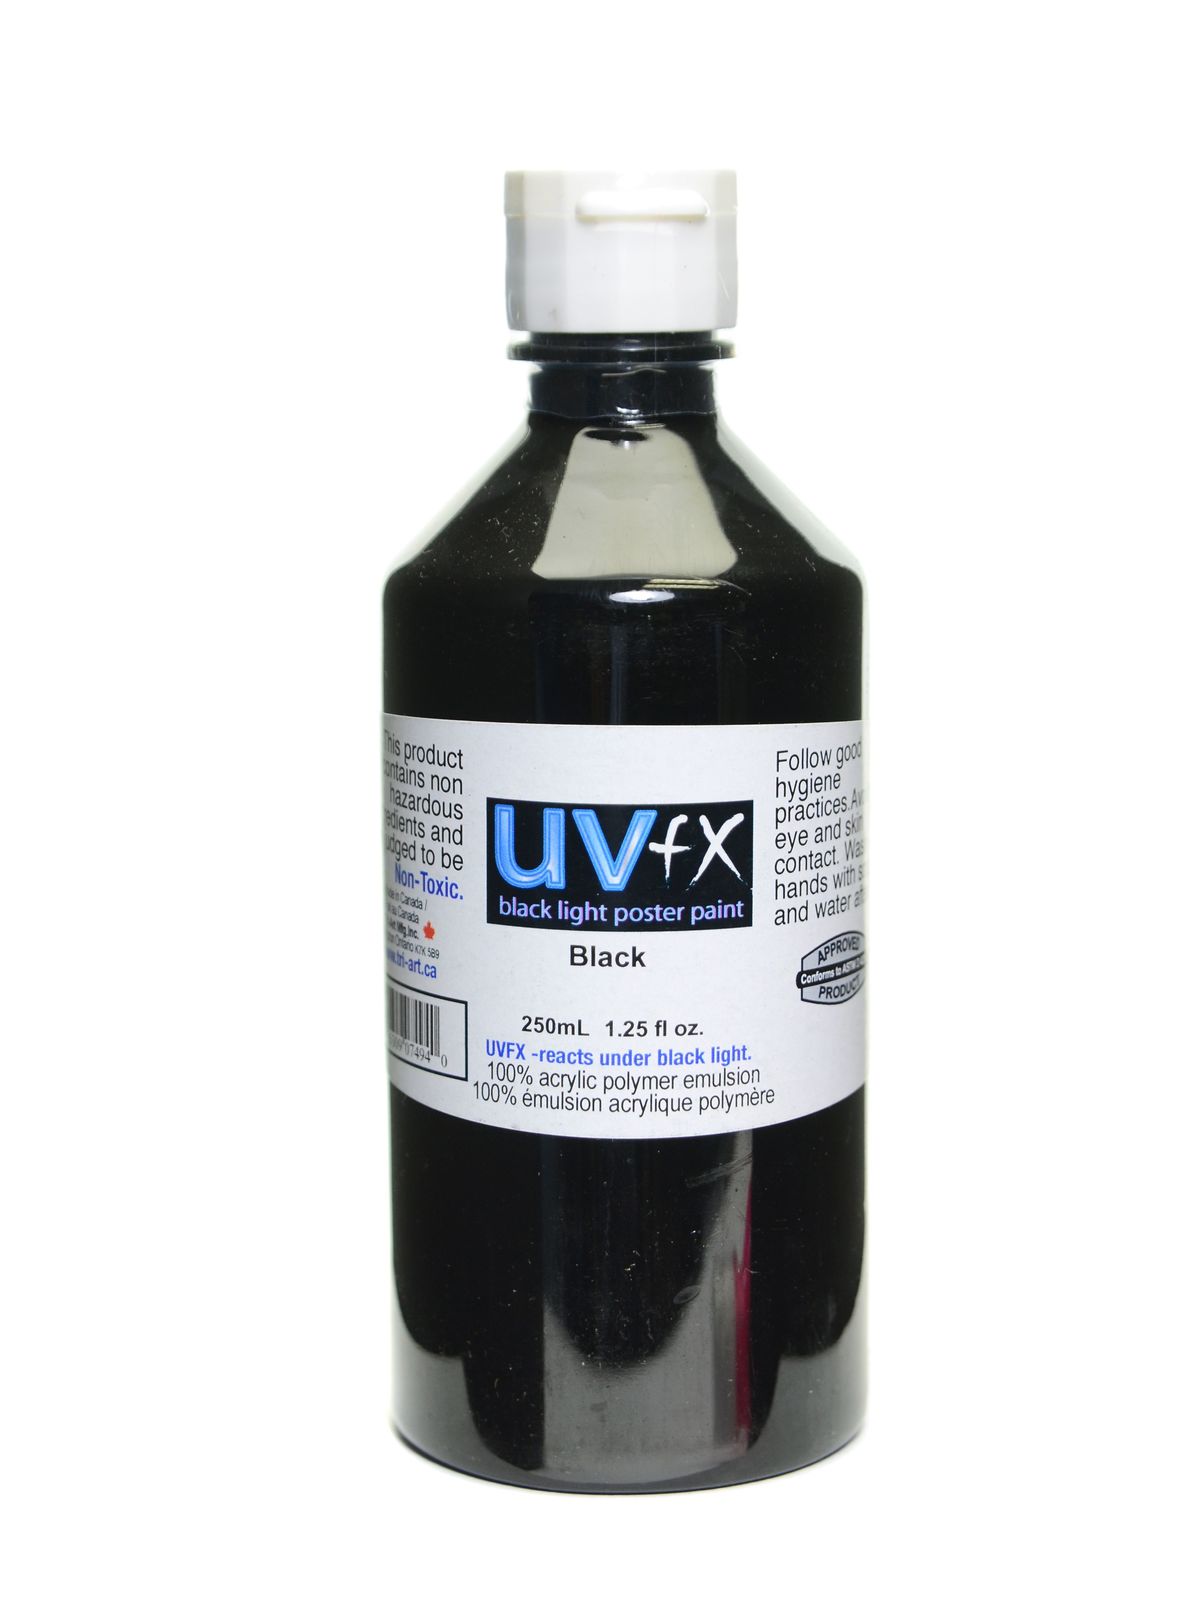 Uvfx Black Light Poster Paint Black 250 Ml Bottle